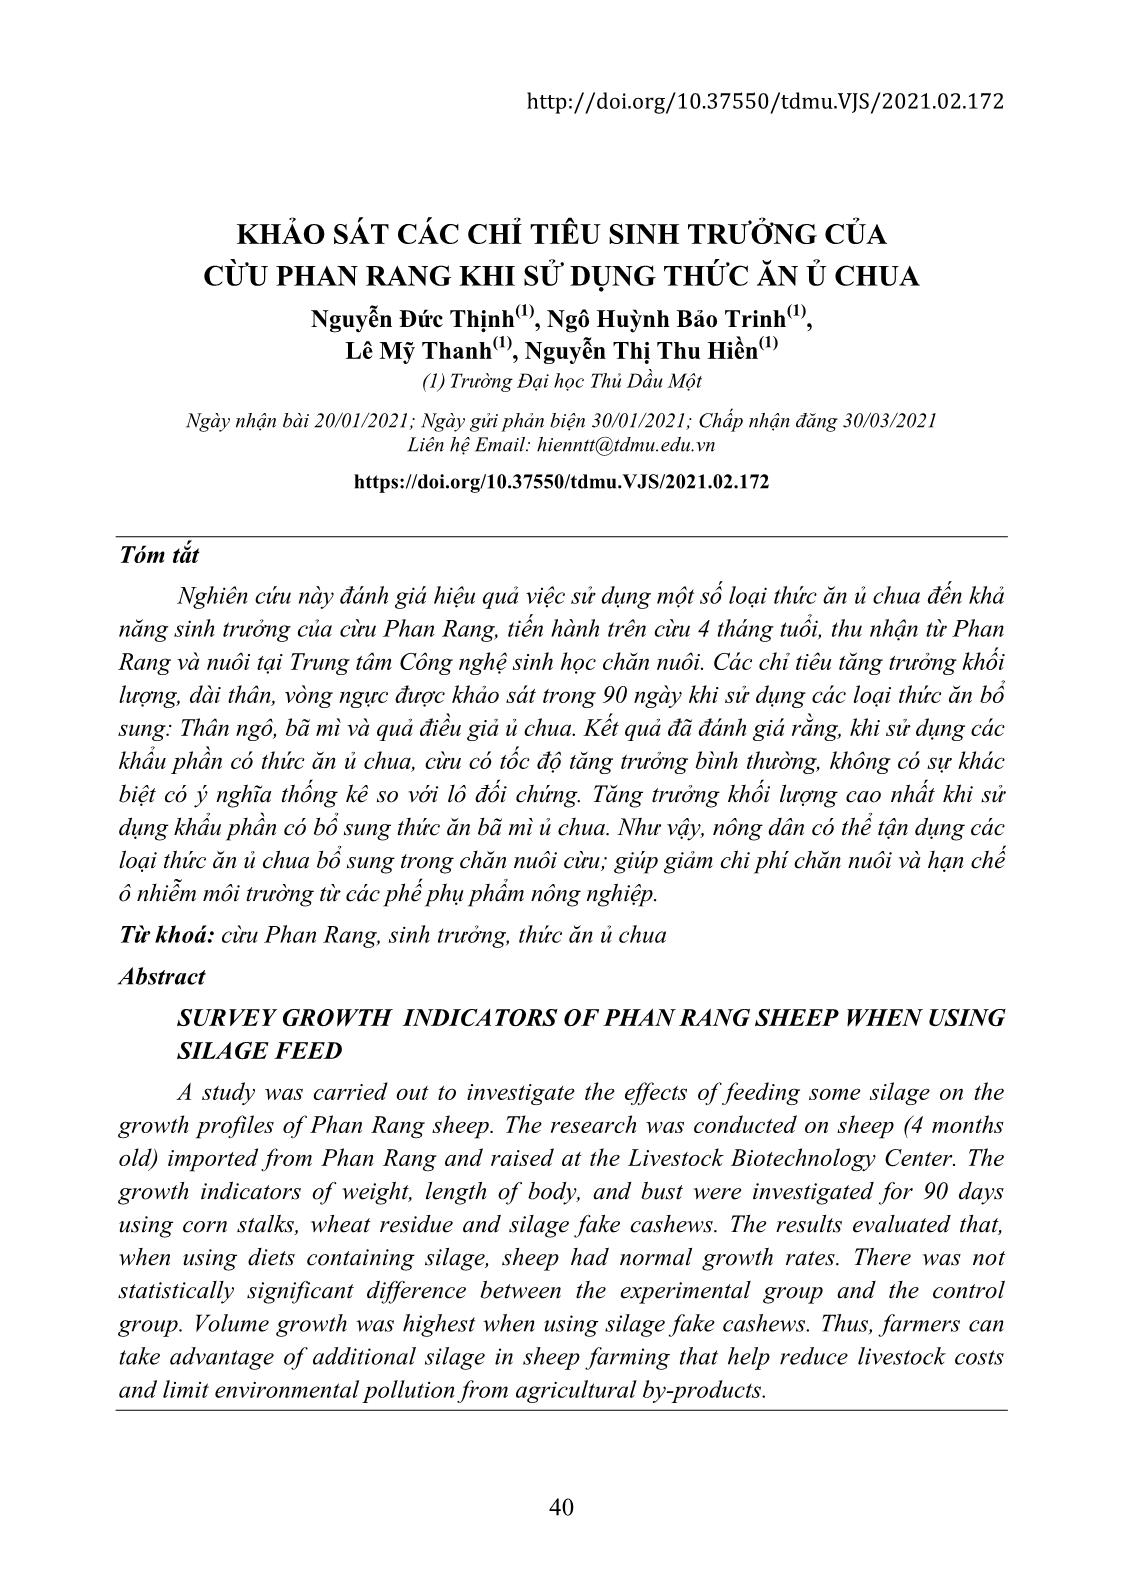 Khảo sát các chỉ tiêu sinh trưởng của cừu Phan Rang khi sử dụng thức ăn ủ chua trang 1